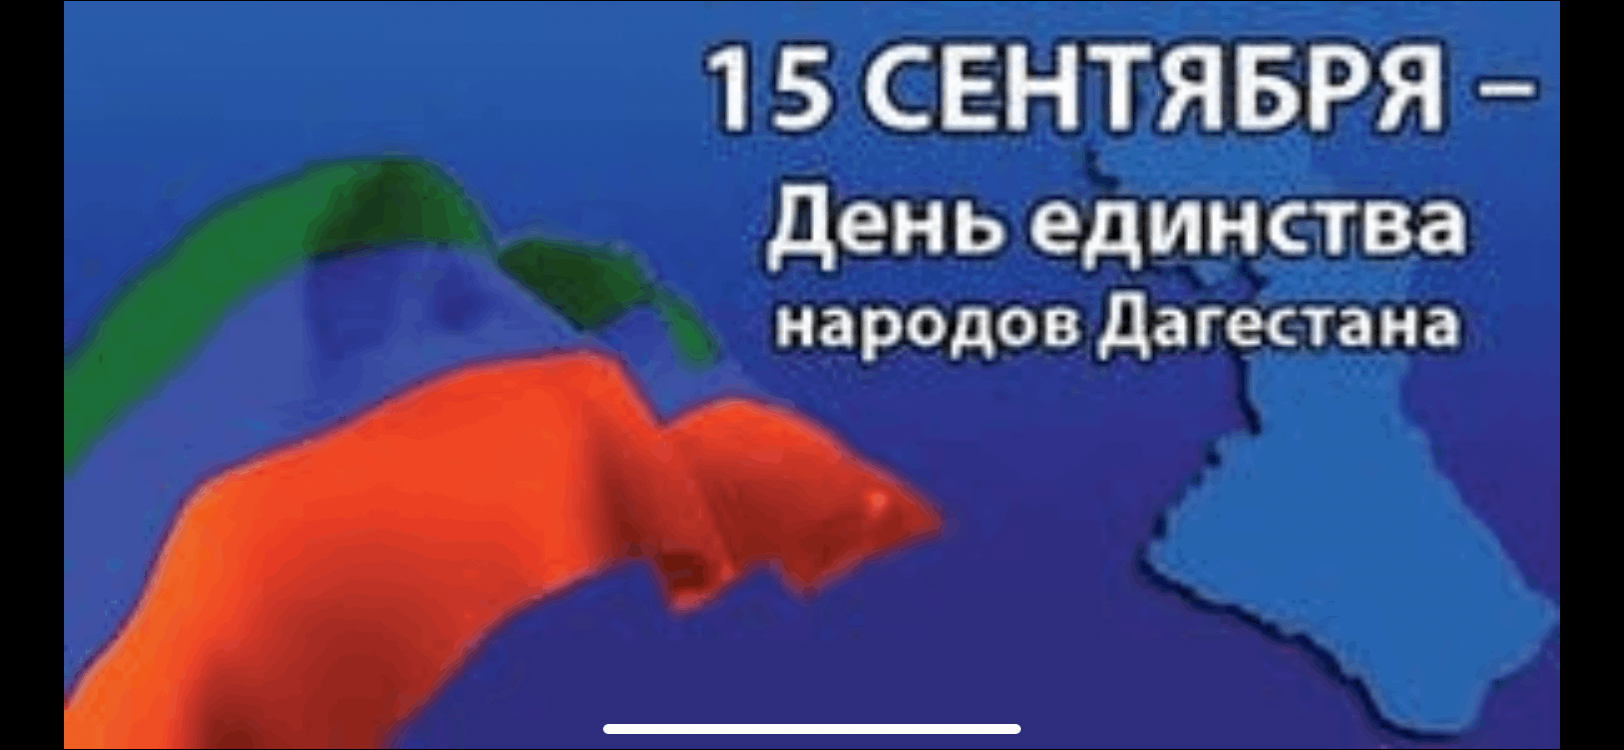 15 Сентября день единства народов Дагестана